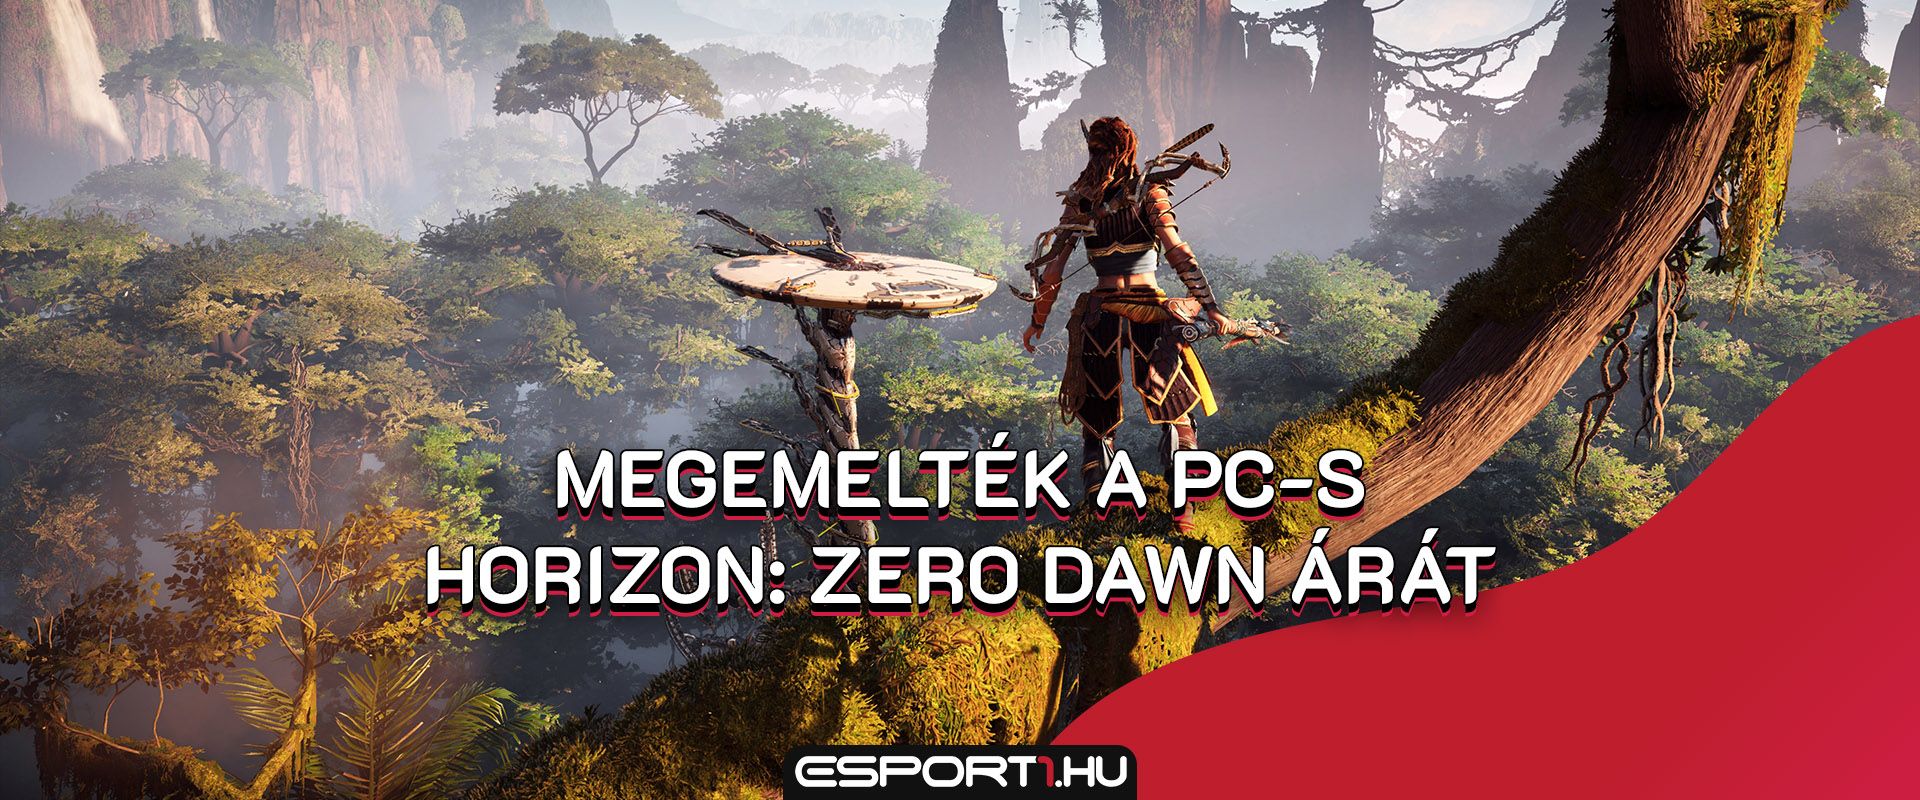 Váratlanul megemelték a PC-s Horizon: Zero Dawn árát Steamen